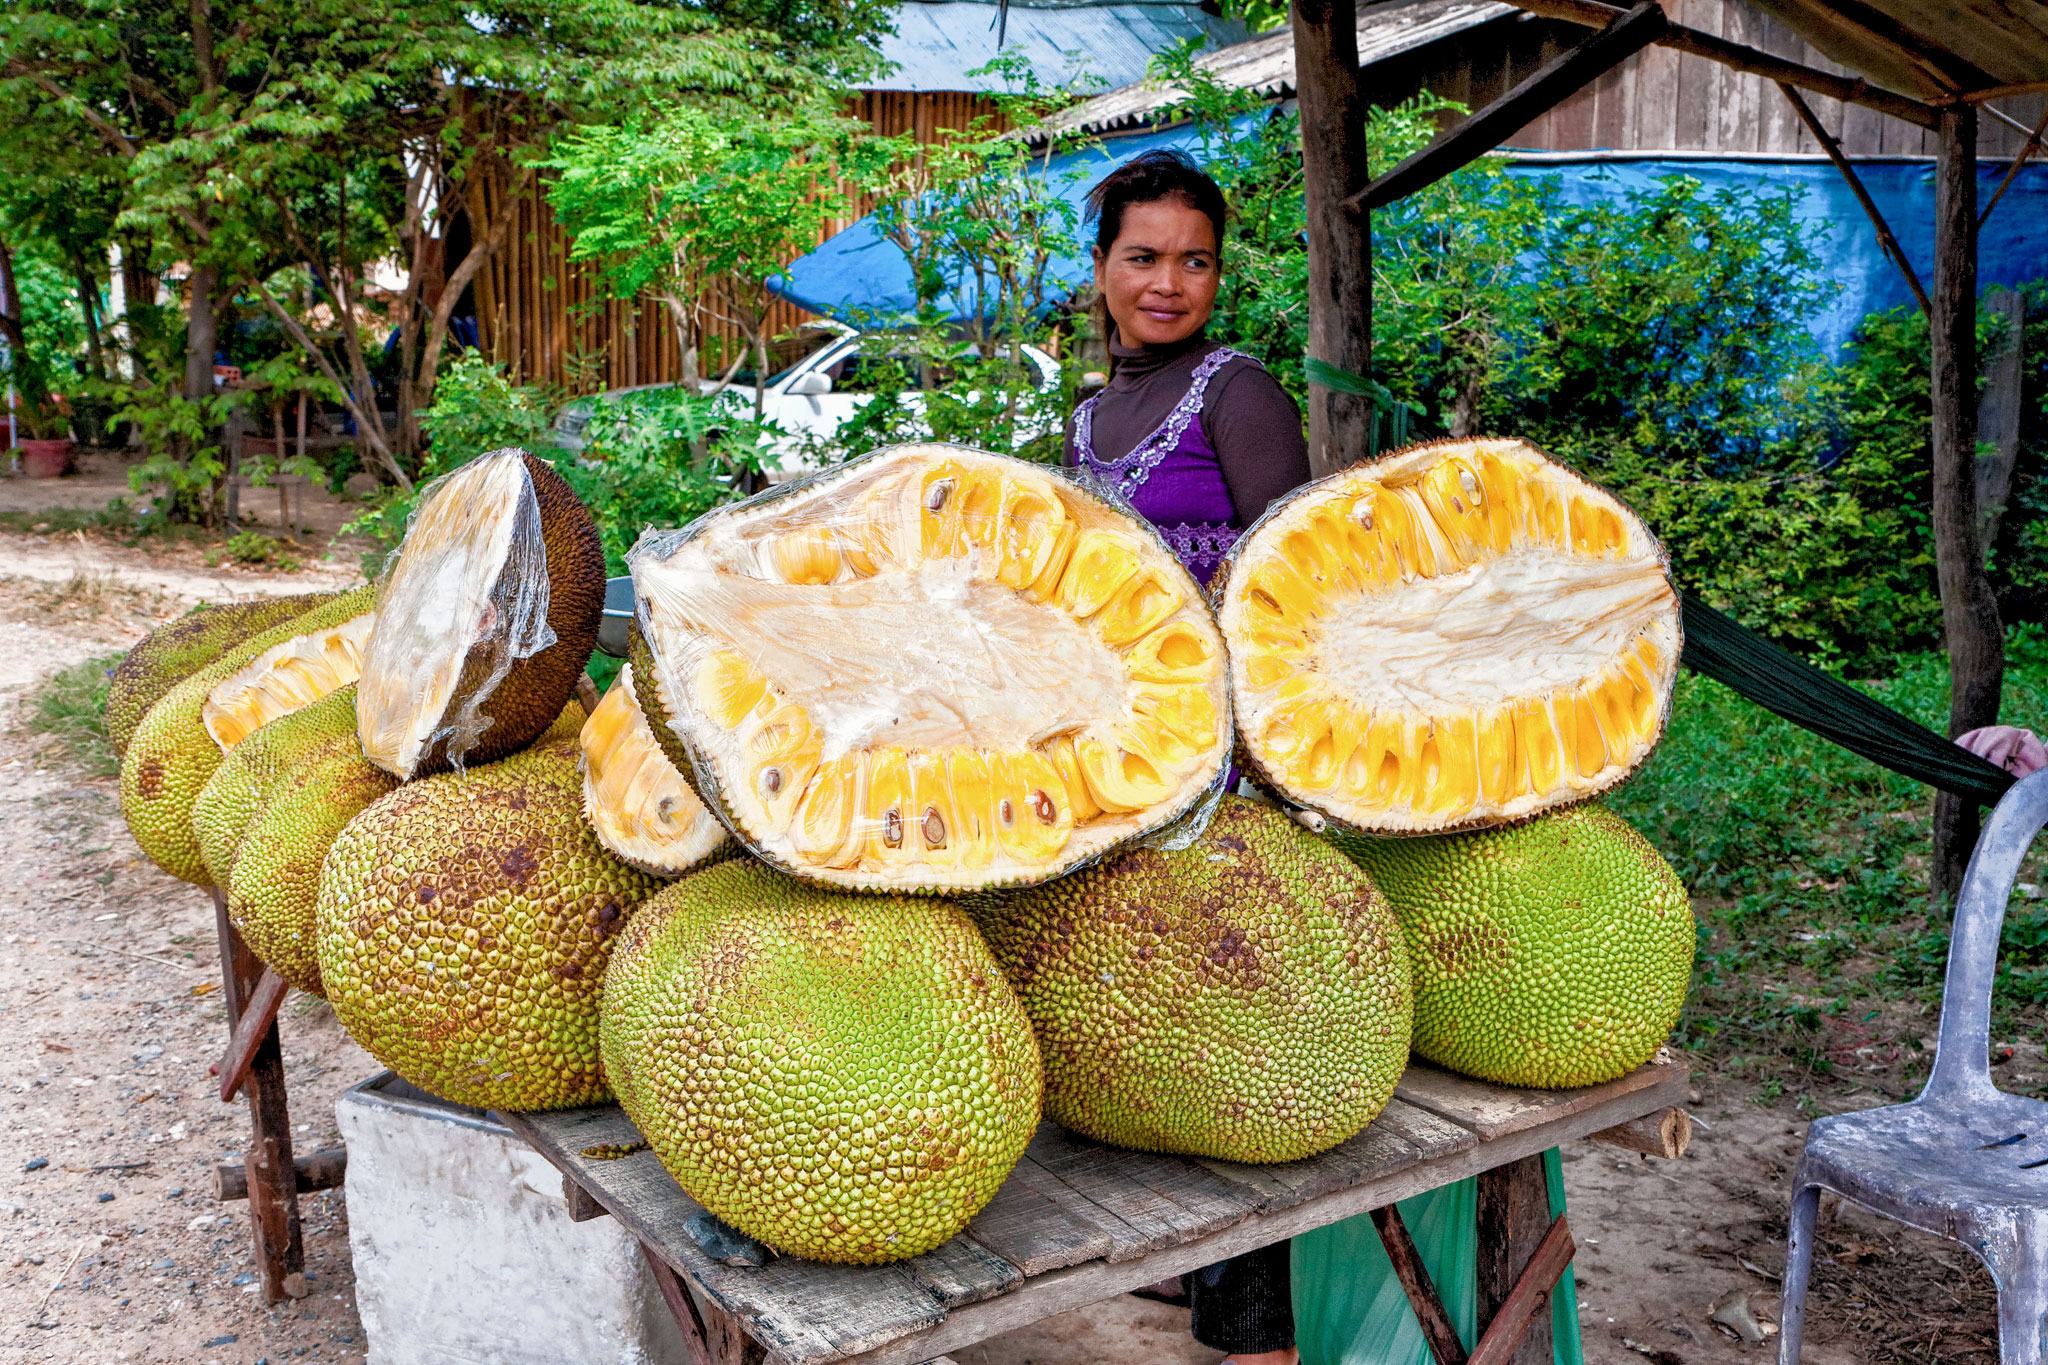 Large jackfruit photo